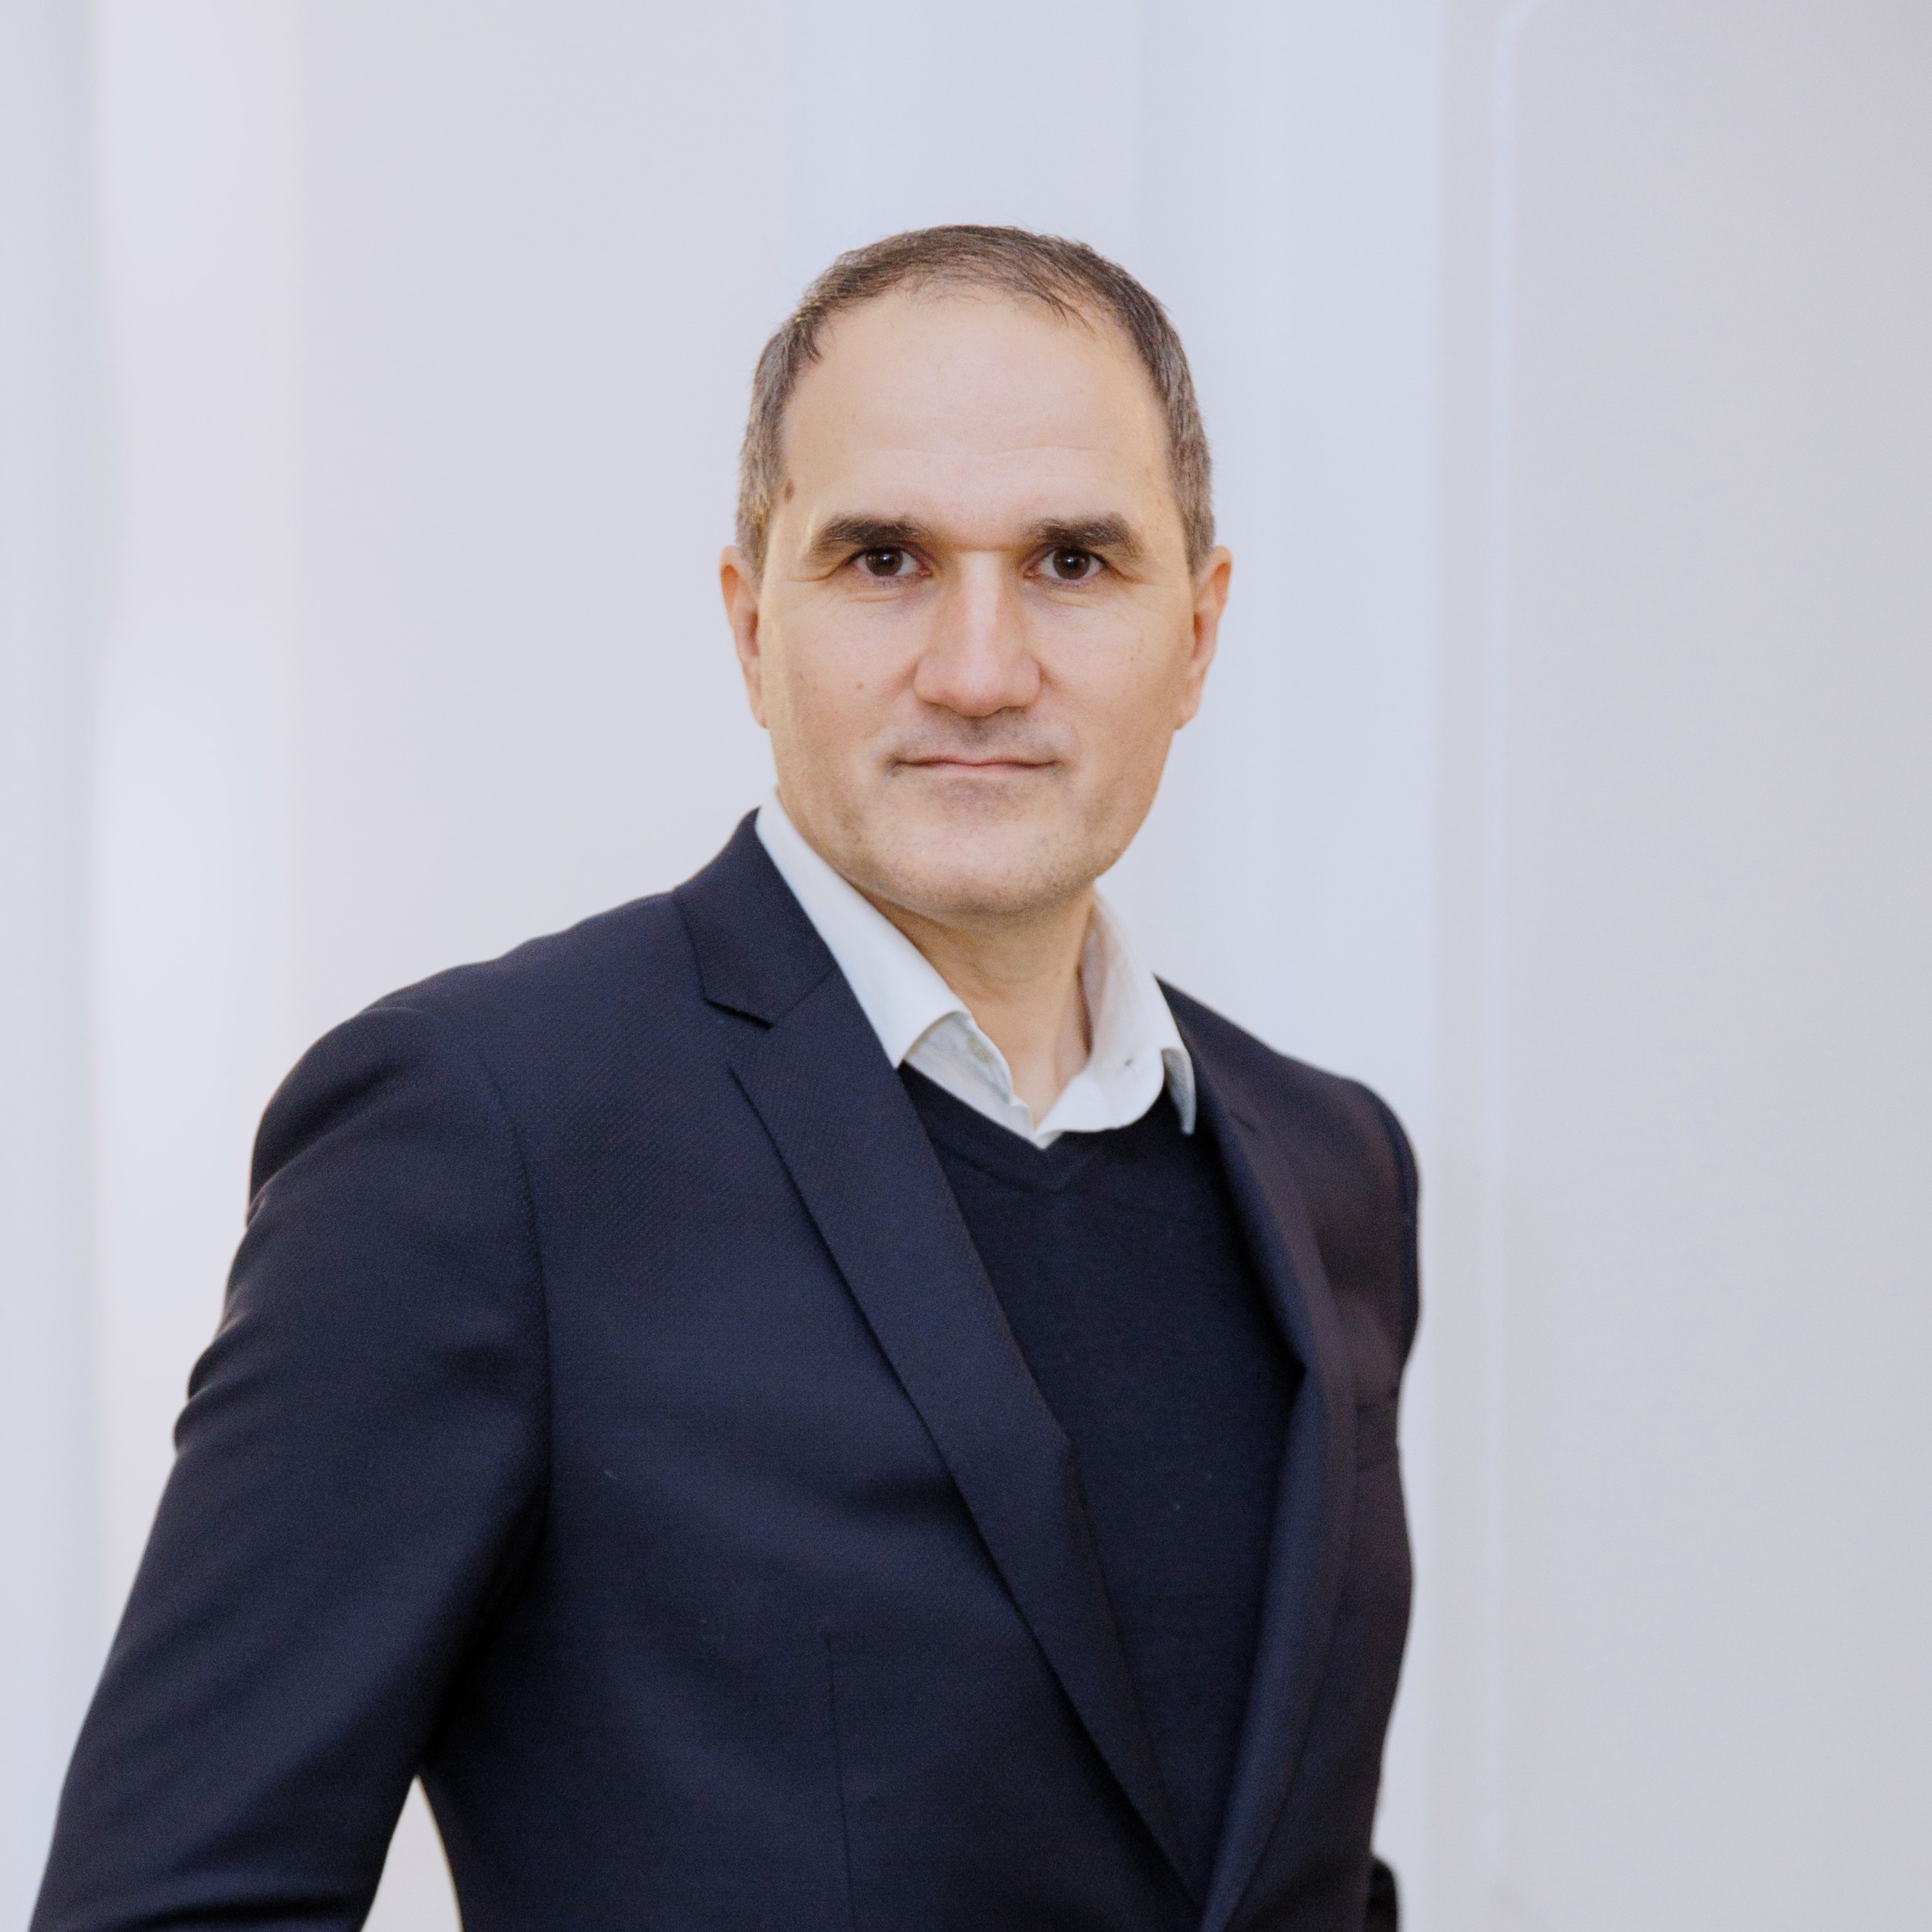 Profile image of Prof. Constantin Iordachi